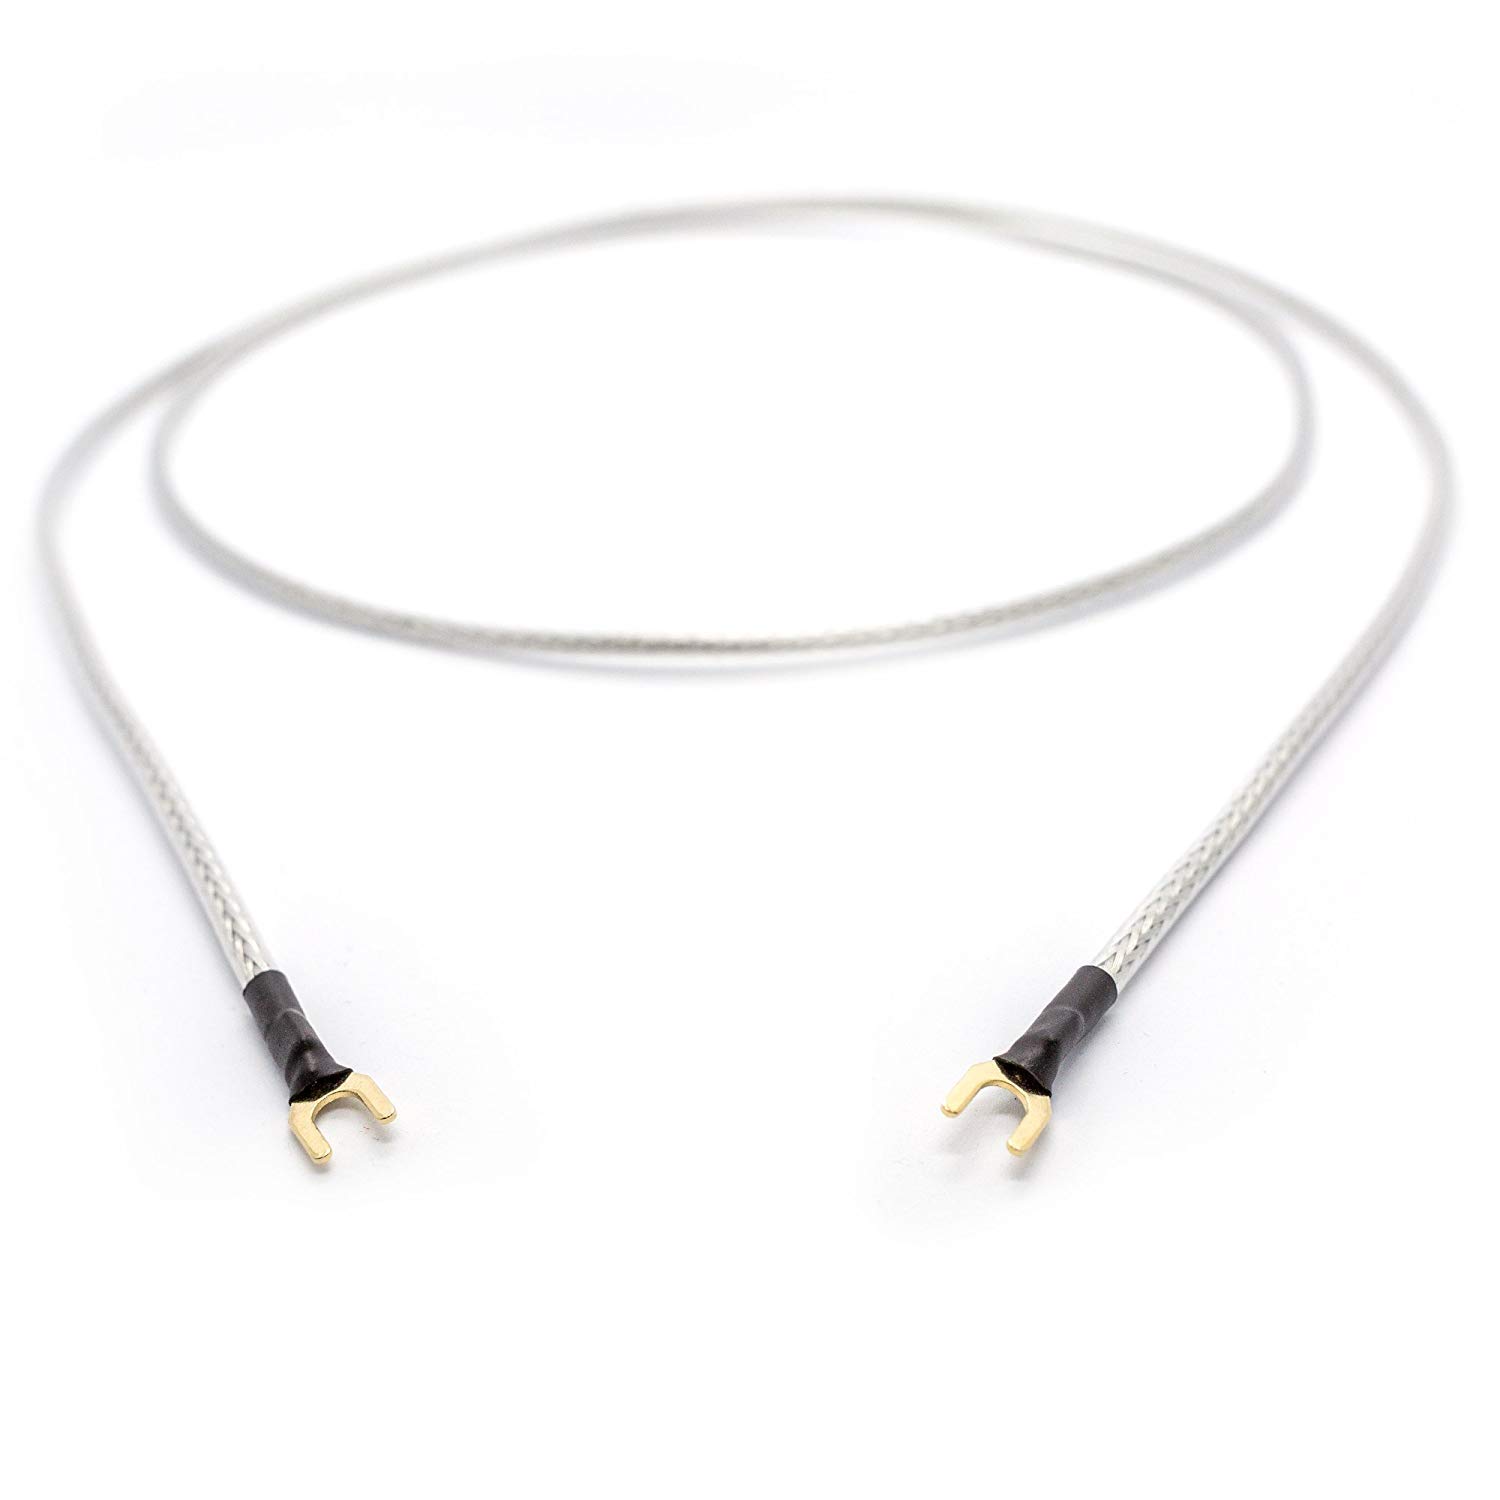 Selected Cable 100cm Erdungsleitung 1x 0,50mm² für Plattenspieler Phonogeräte mit Masseanschluß inkl. vergoldeter Gabelschuh Masseleitung transparent Silber Geflechtschirm (1m)